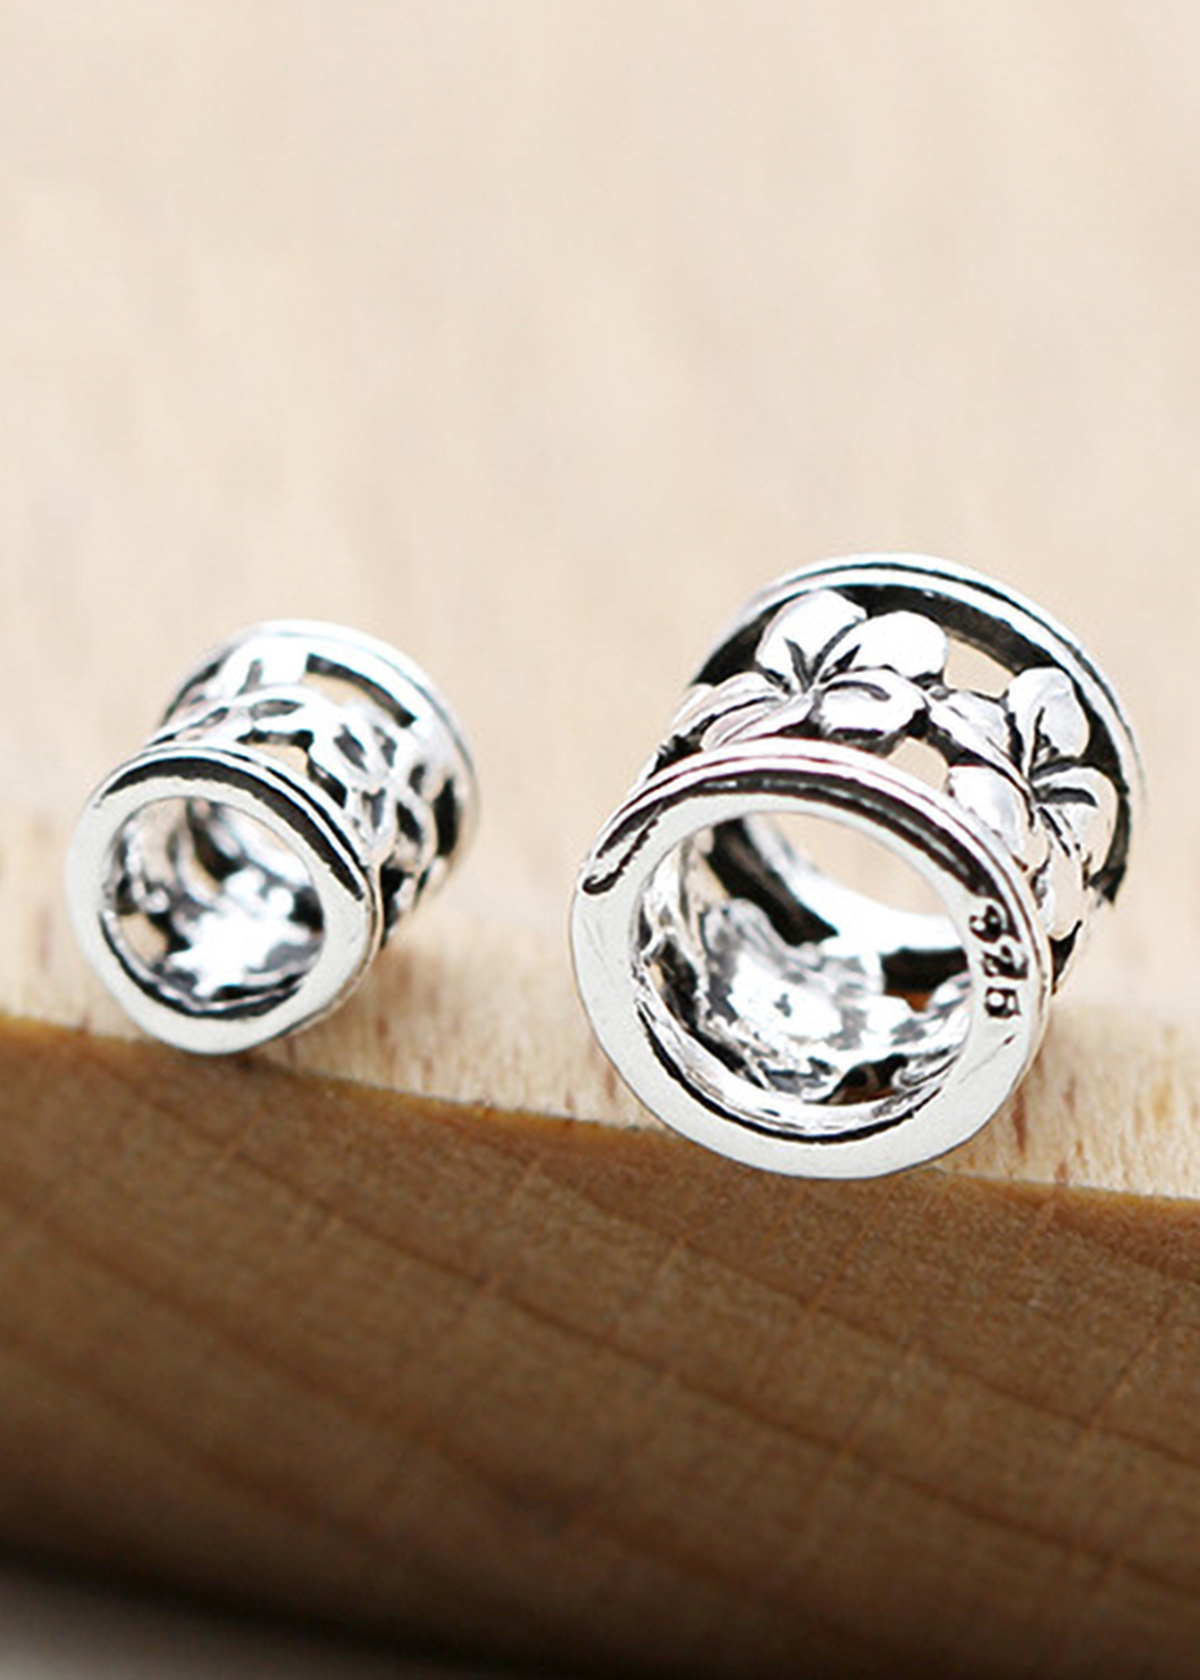 Combo 3 cái charm bạc chặn hạt hình trụ họa tiết bông hoa - Ngọc Quý Gemstones